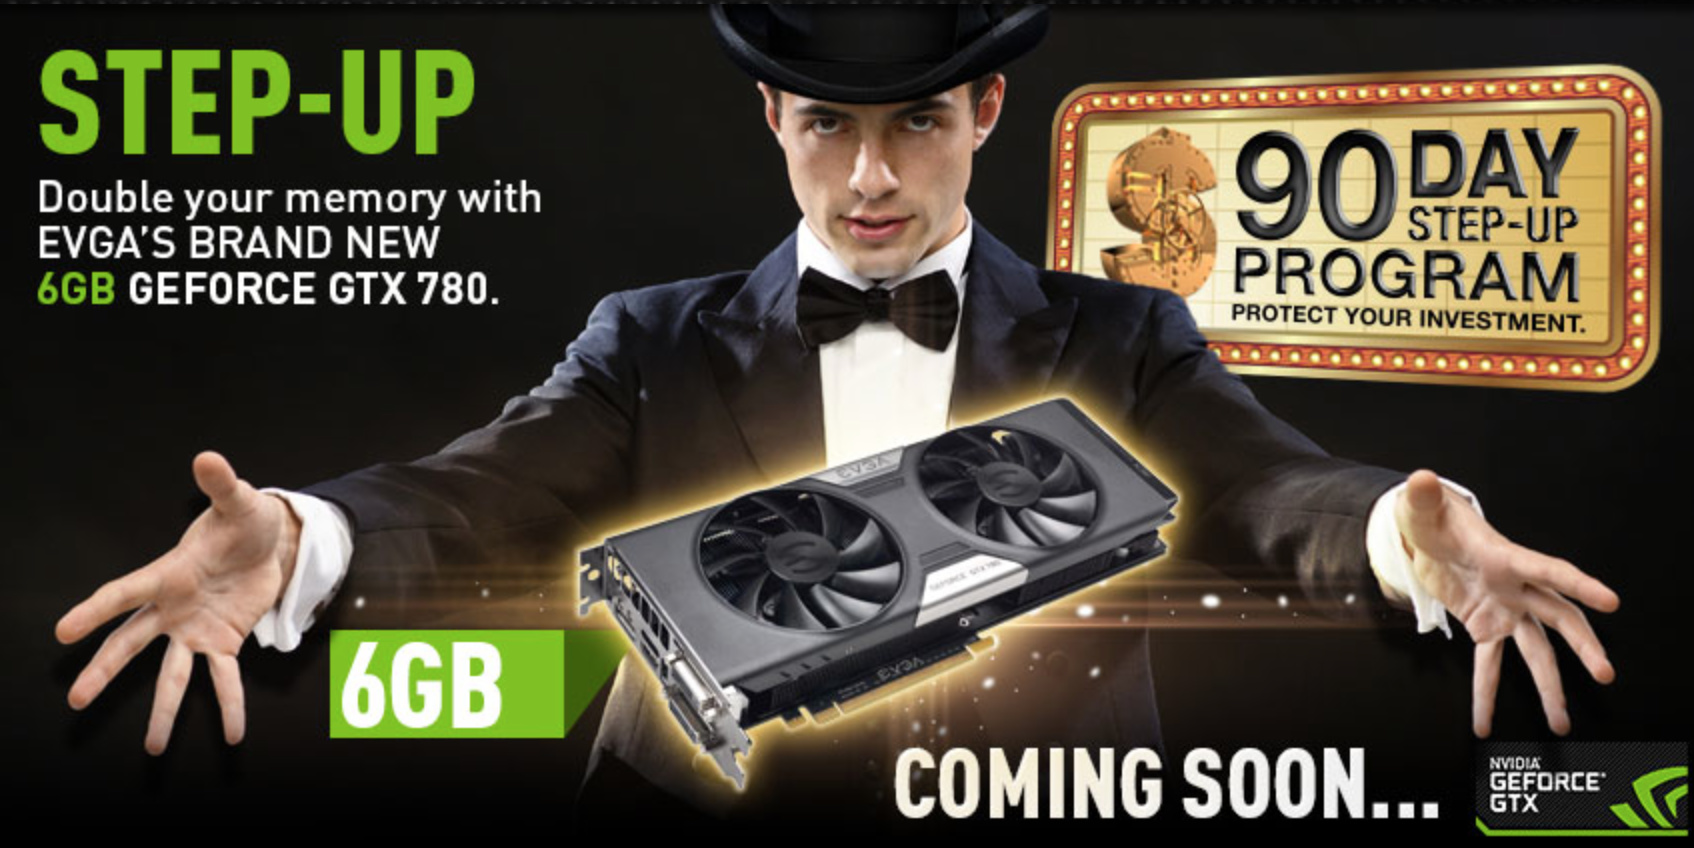 Die GeForce GTX 780 mit 6 GB Speicher kommt